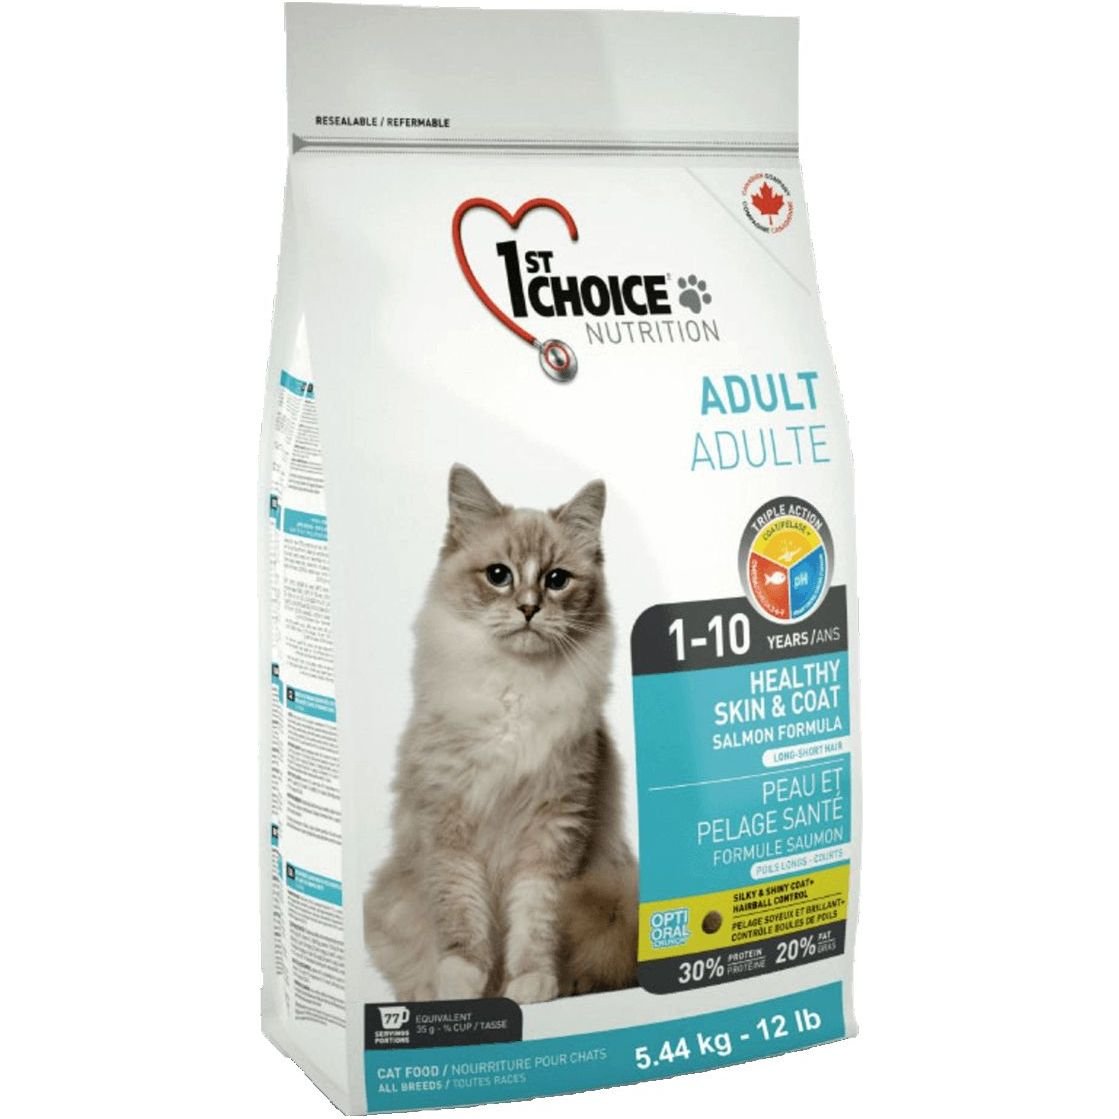 Сухий корм для дорослих котів 1st Choice Adult Healthy Skin & Coat, з лососем, 5.44 кг - фото 1